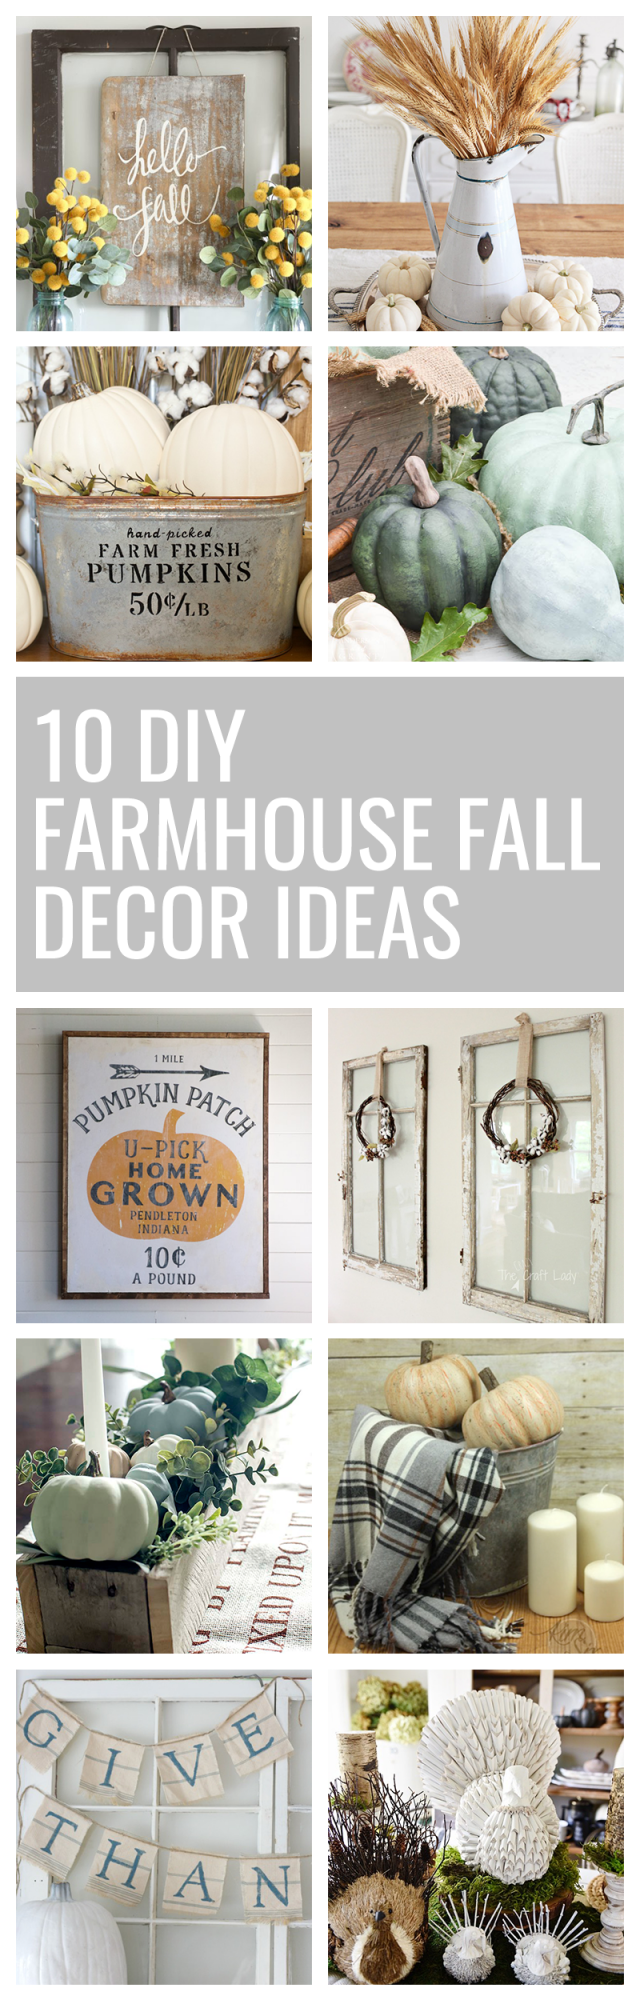 10 DIY Farmhouse Fall Decor Ideas